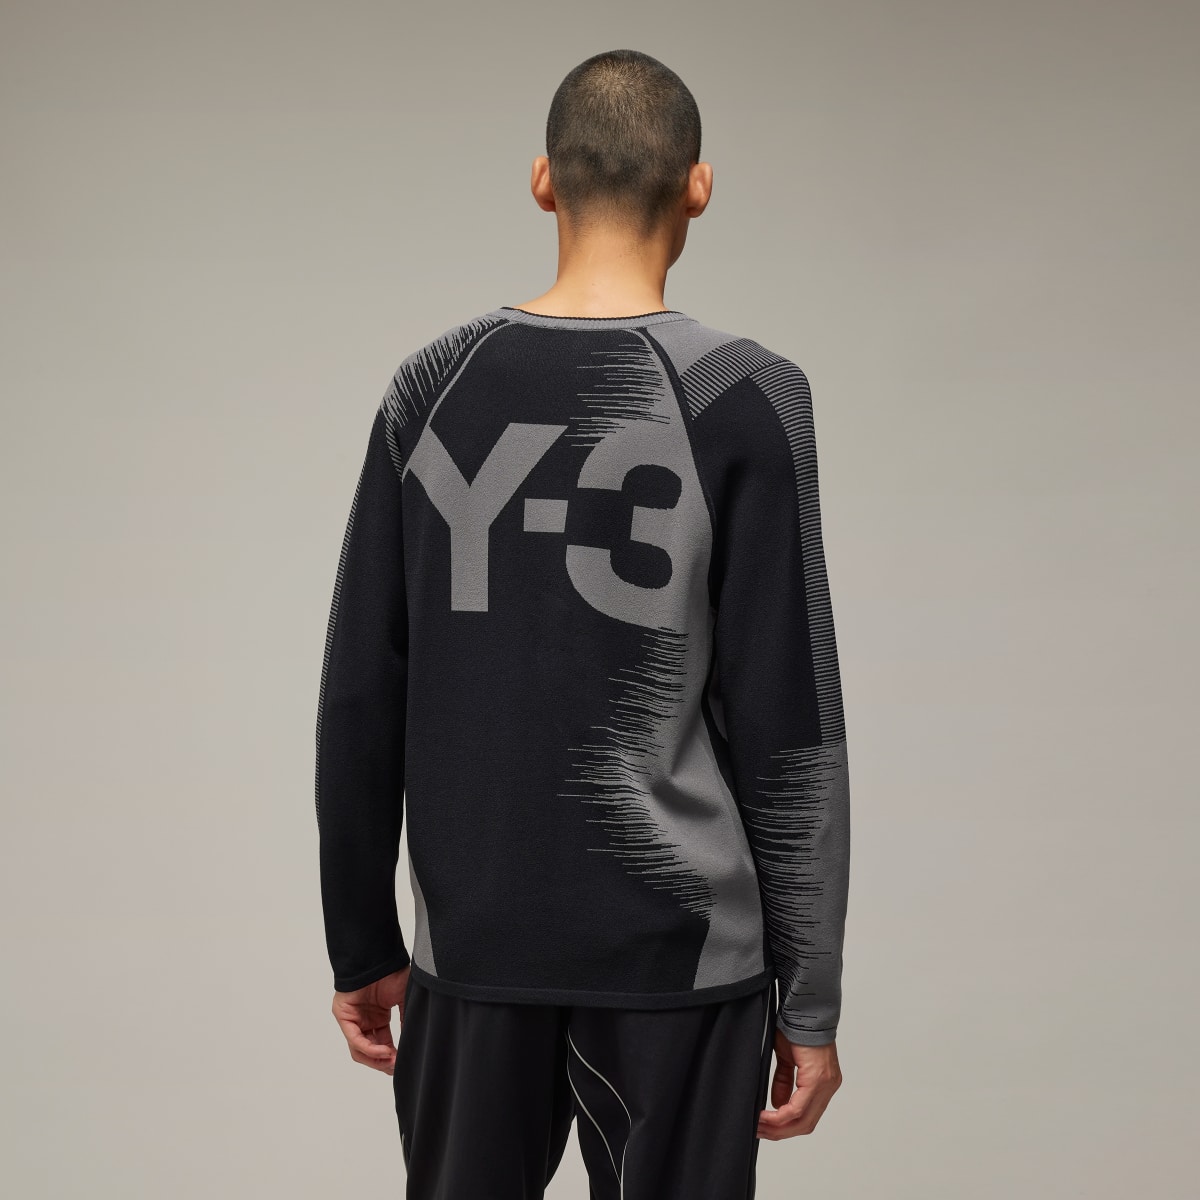 Adidas Y-3 Logo Knit Sweatshirt. 3